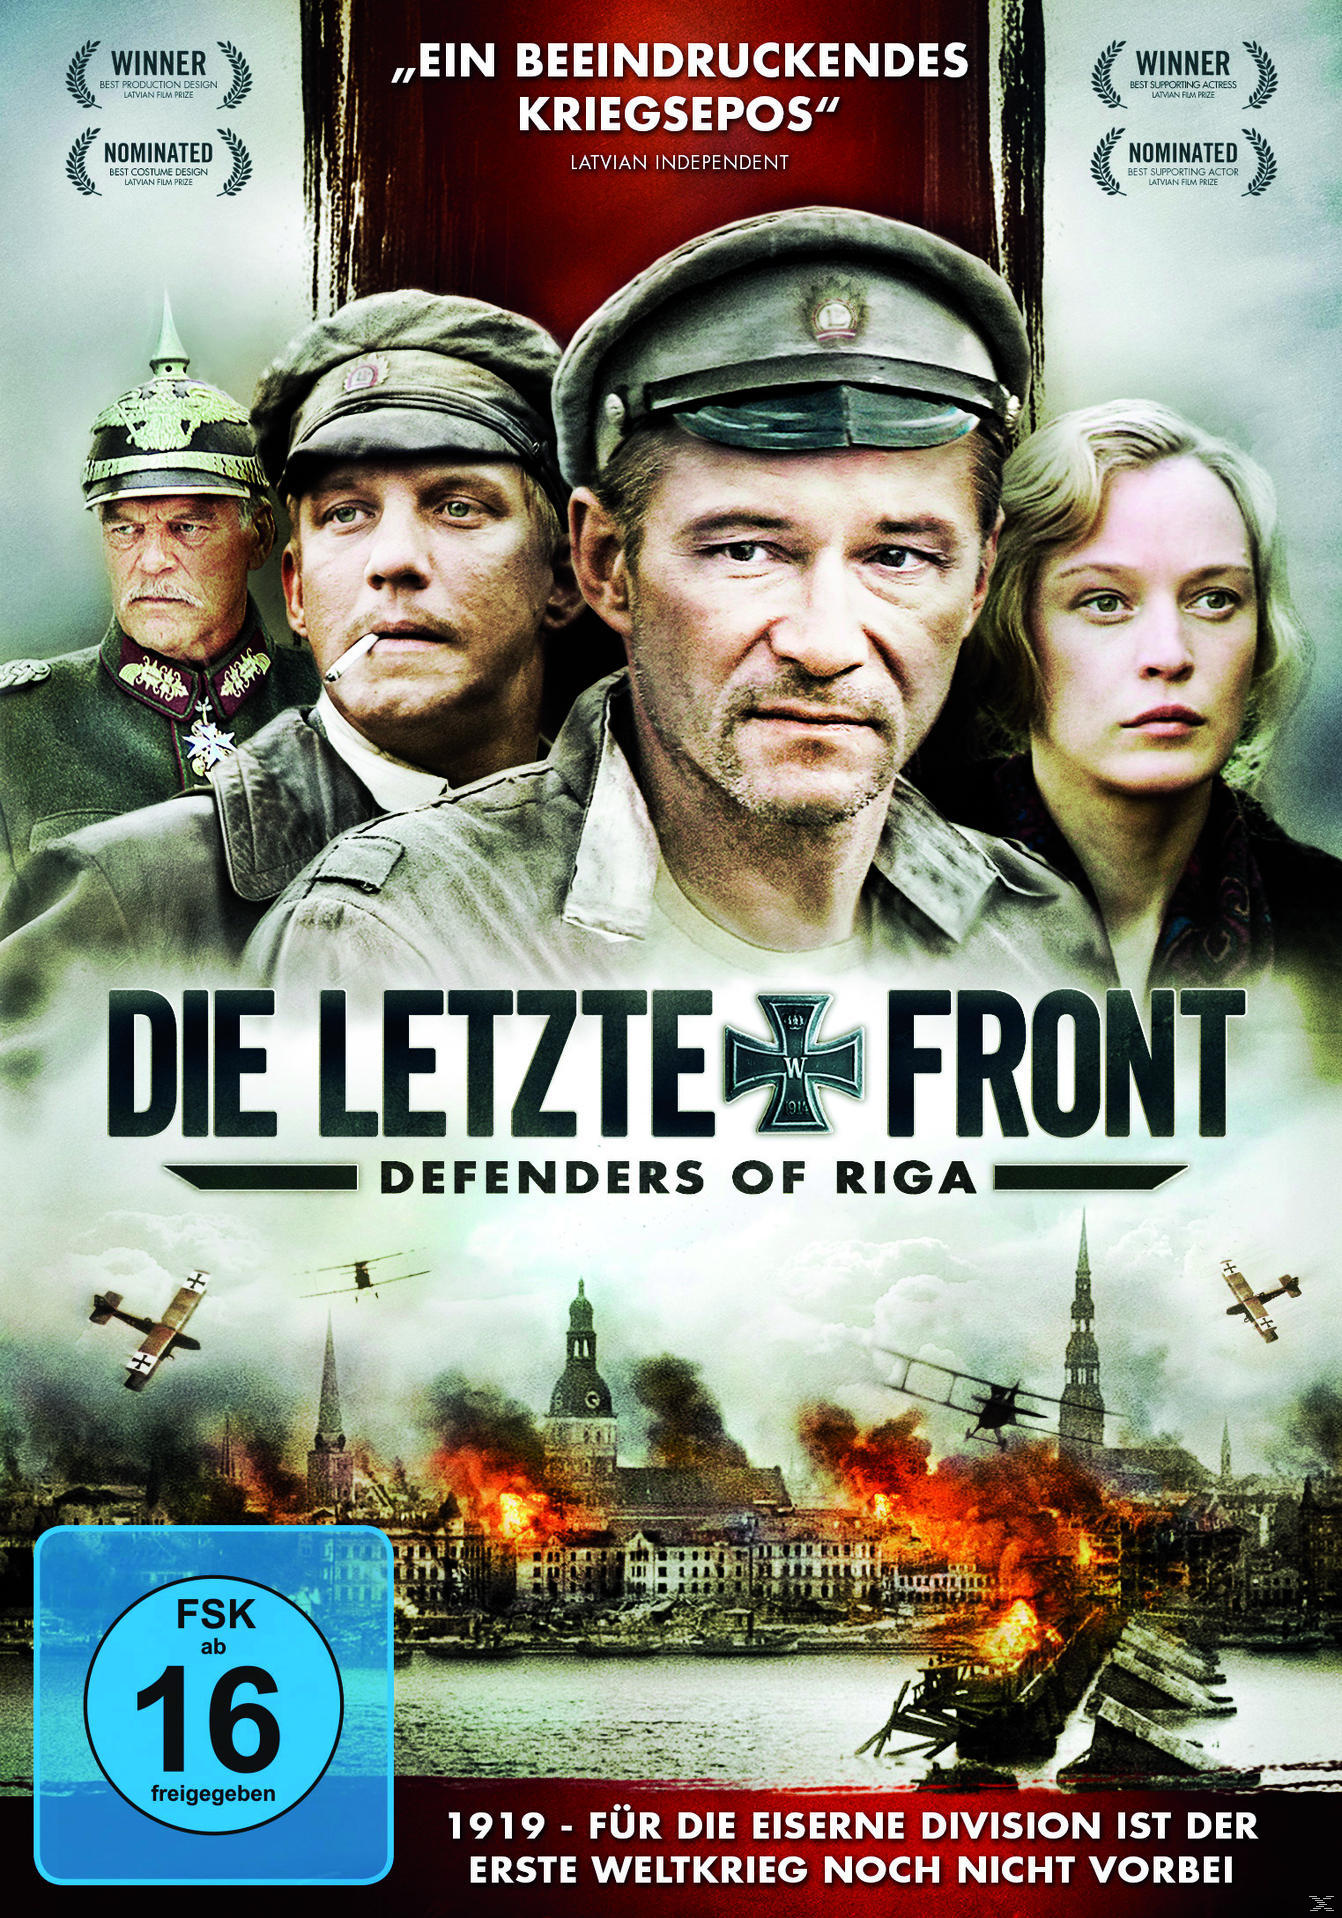 - Riga DVD Die letzte Front of Defenders